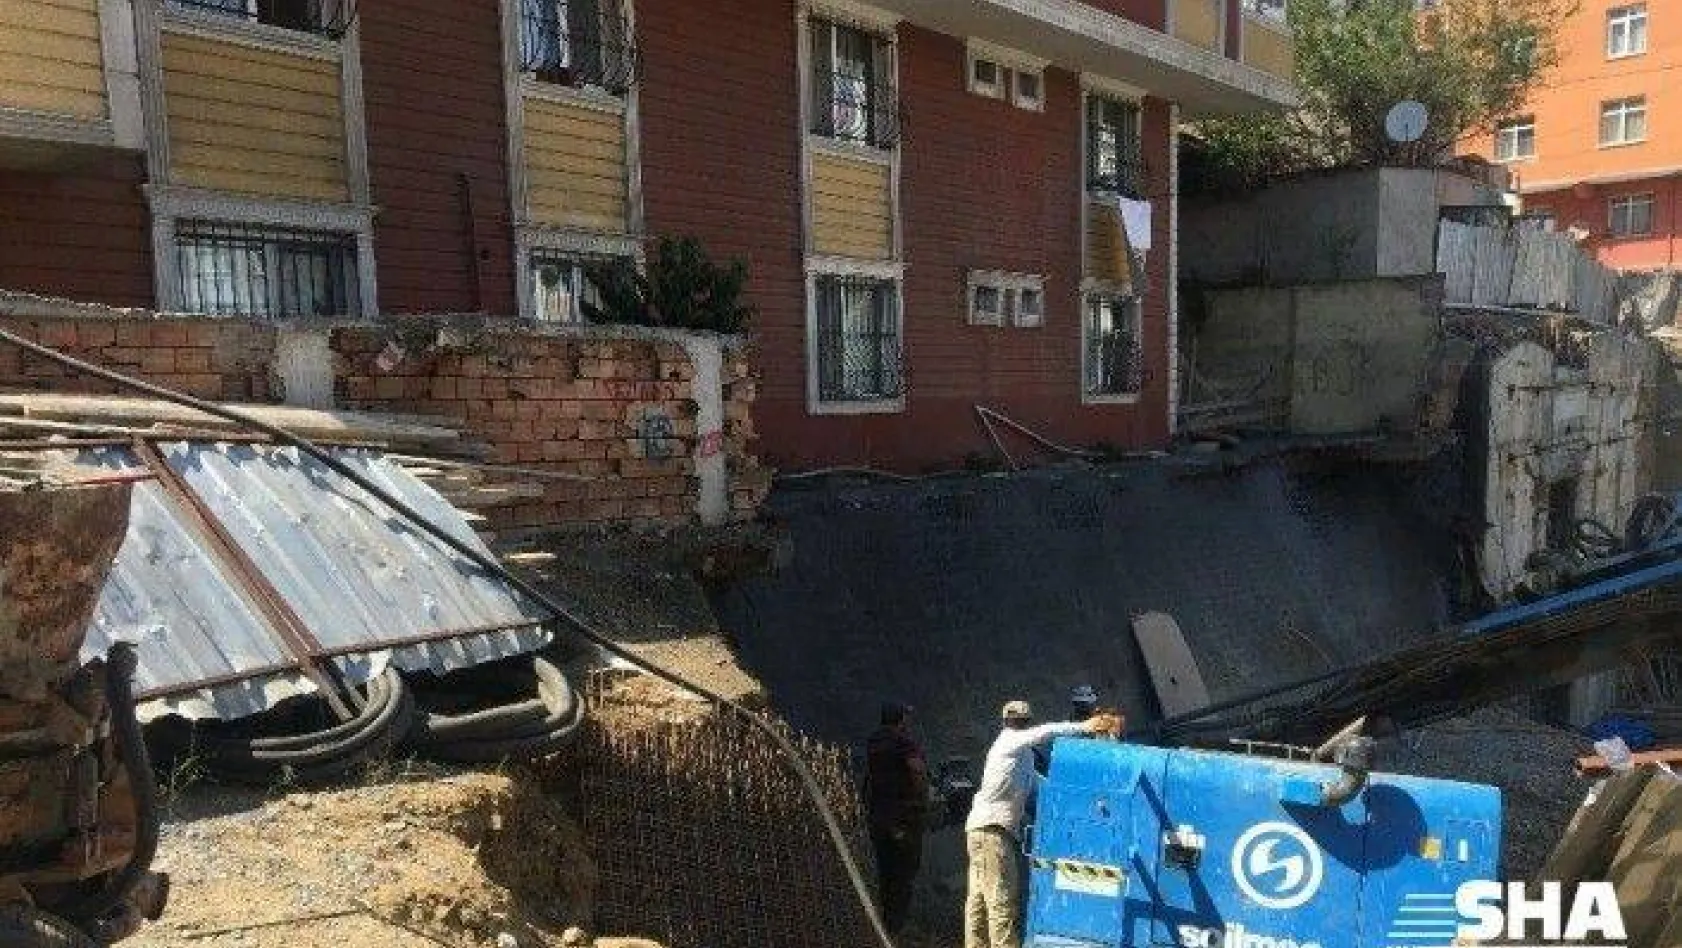 (Özel) Gaziosmanpaşa'da toprak kayması nedeniyle boşaltılan binanın sağlam olduğu tespit edildi